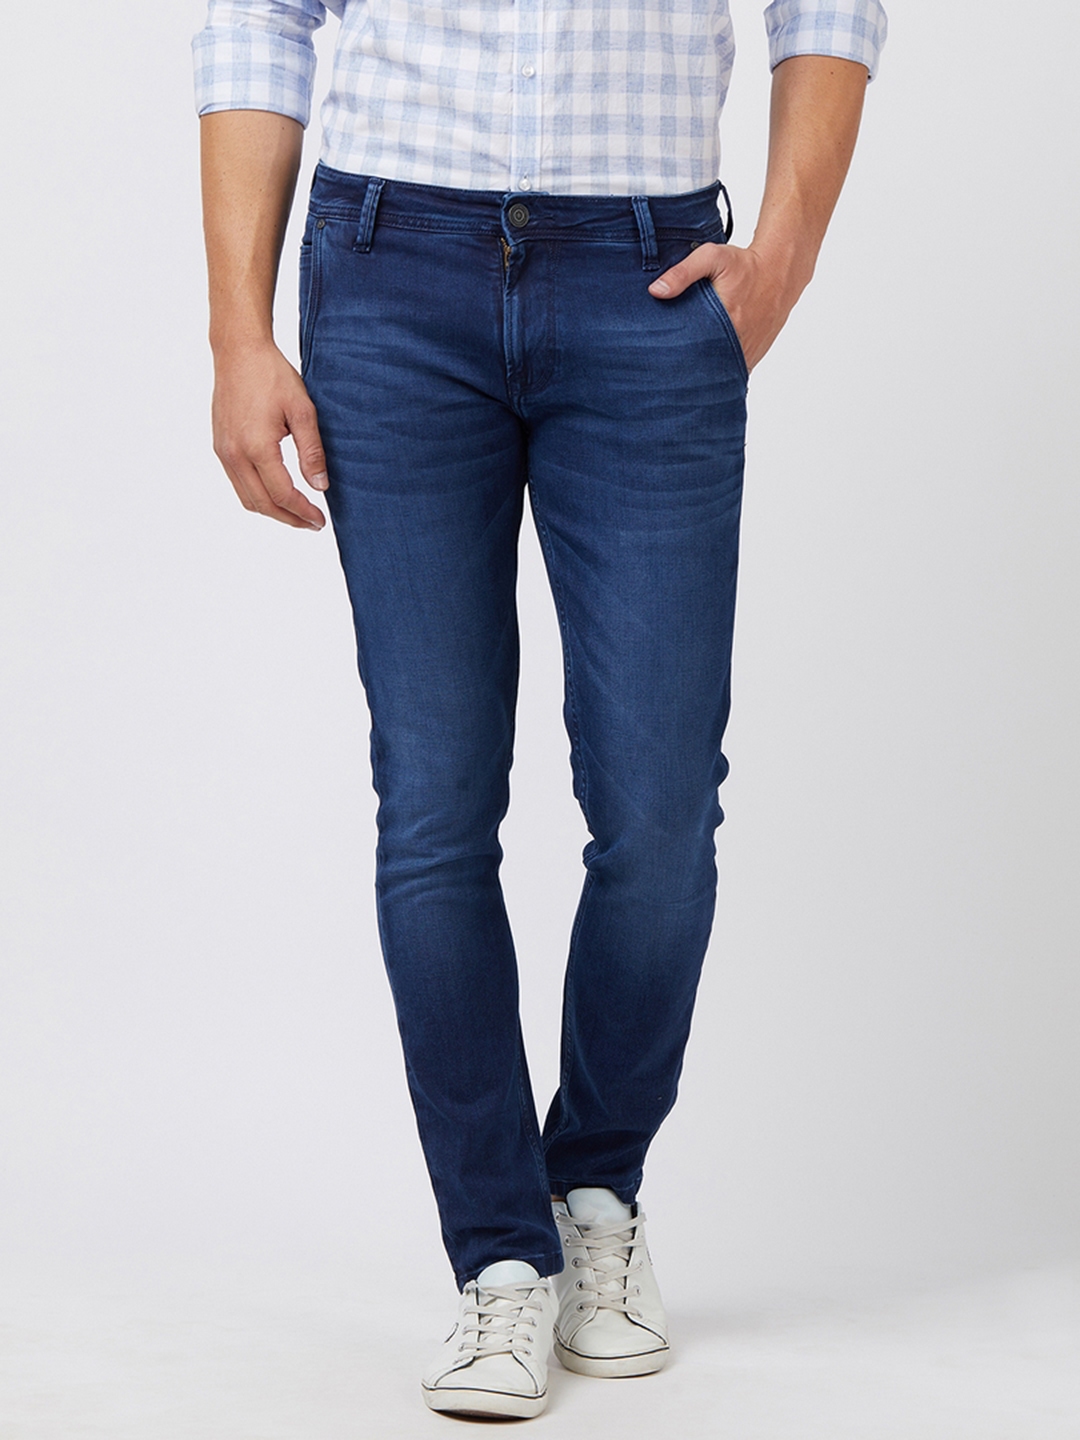 Buy Easies Men Blue Slim Fit Mid Rise Clean Look Jeans - Jeans for Men ...